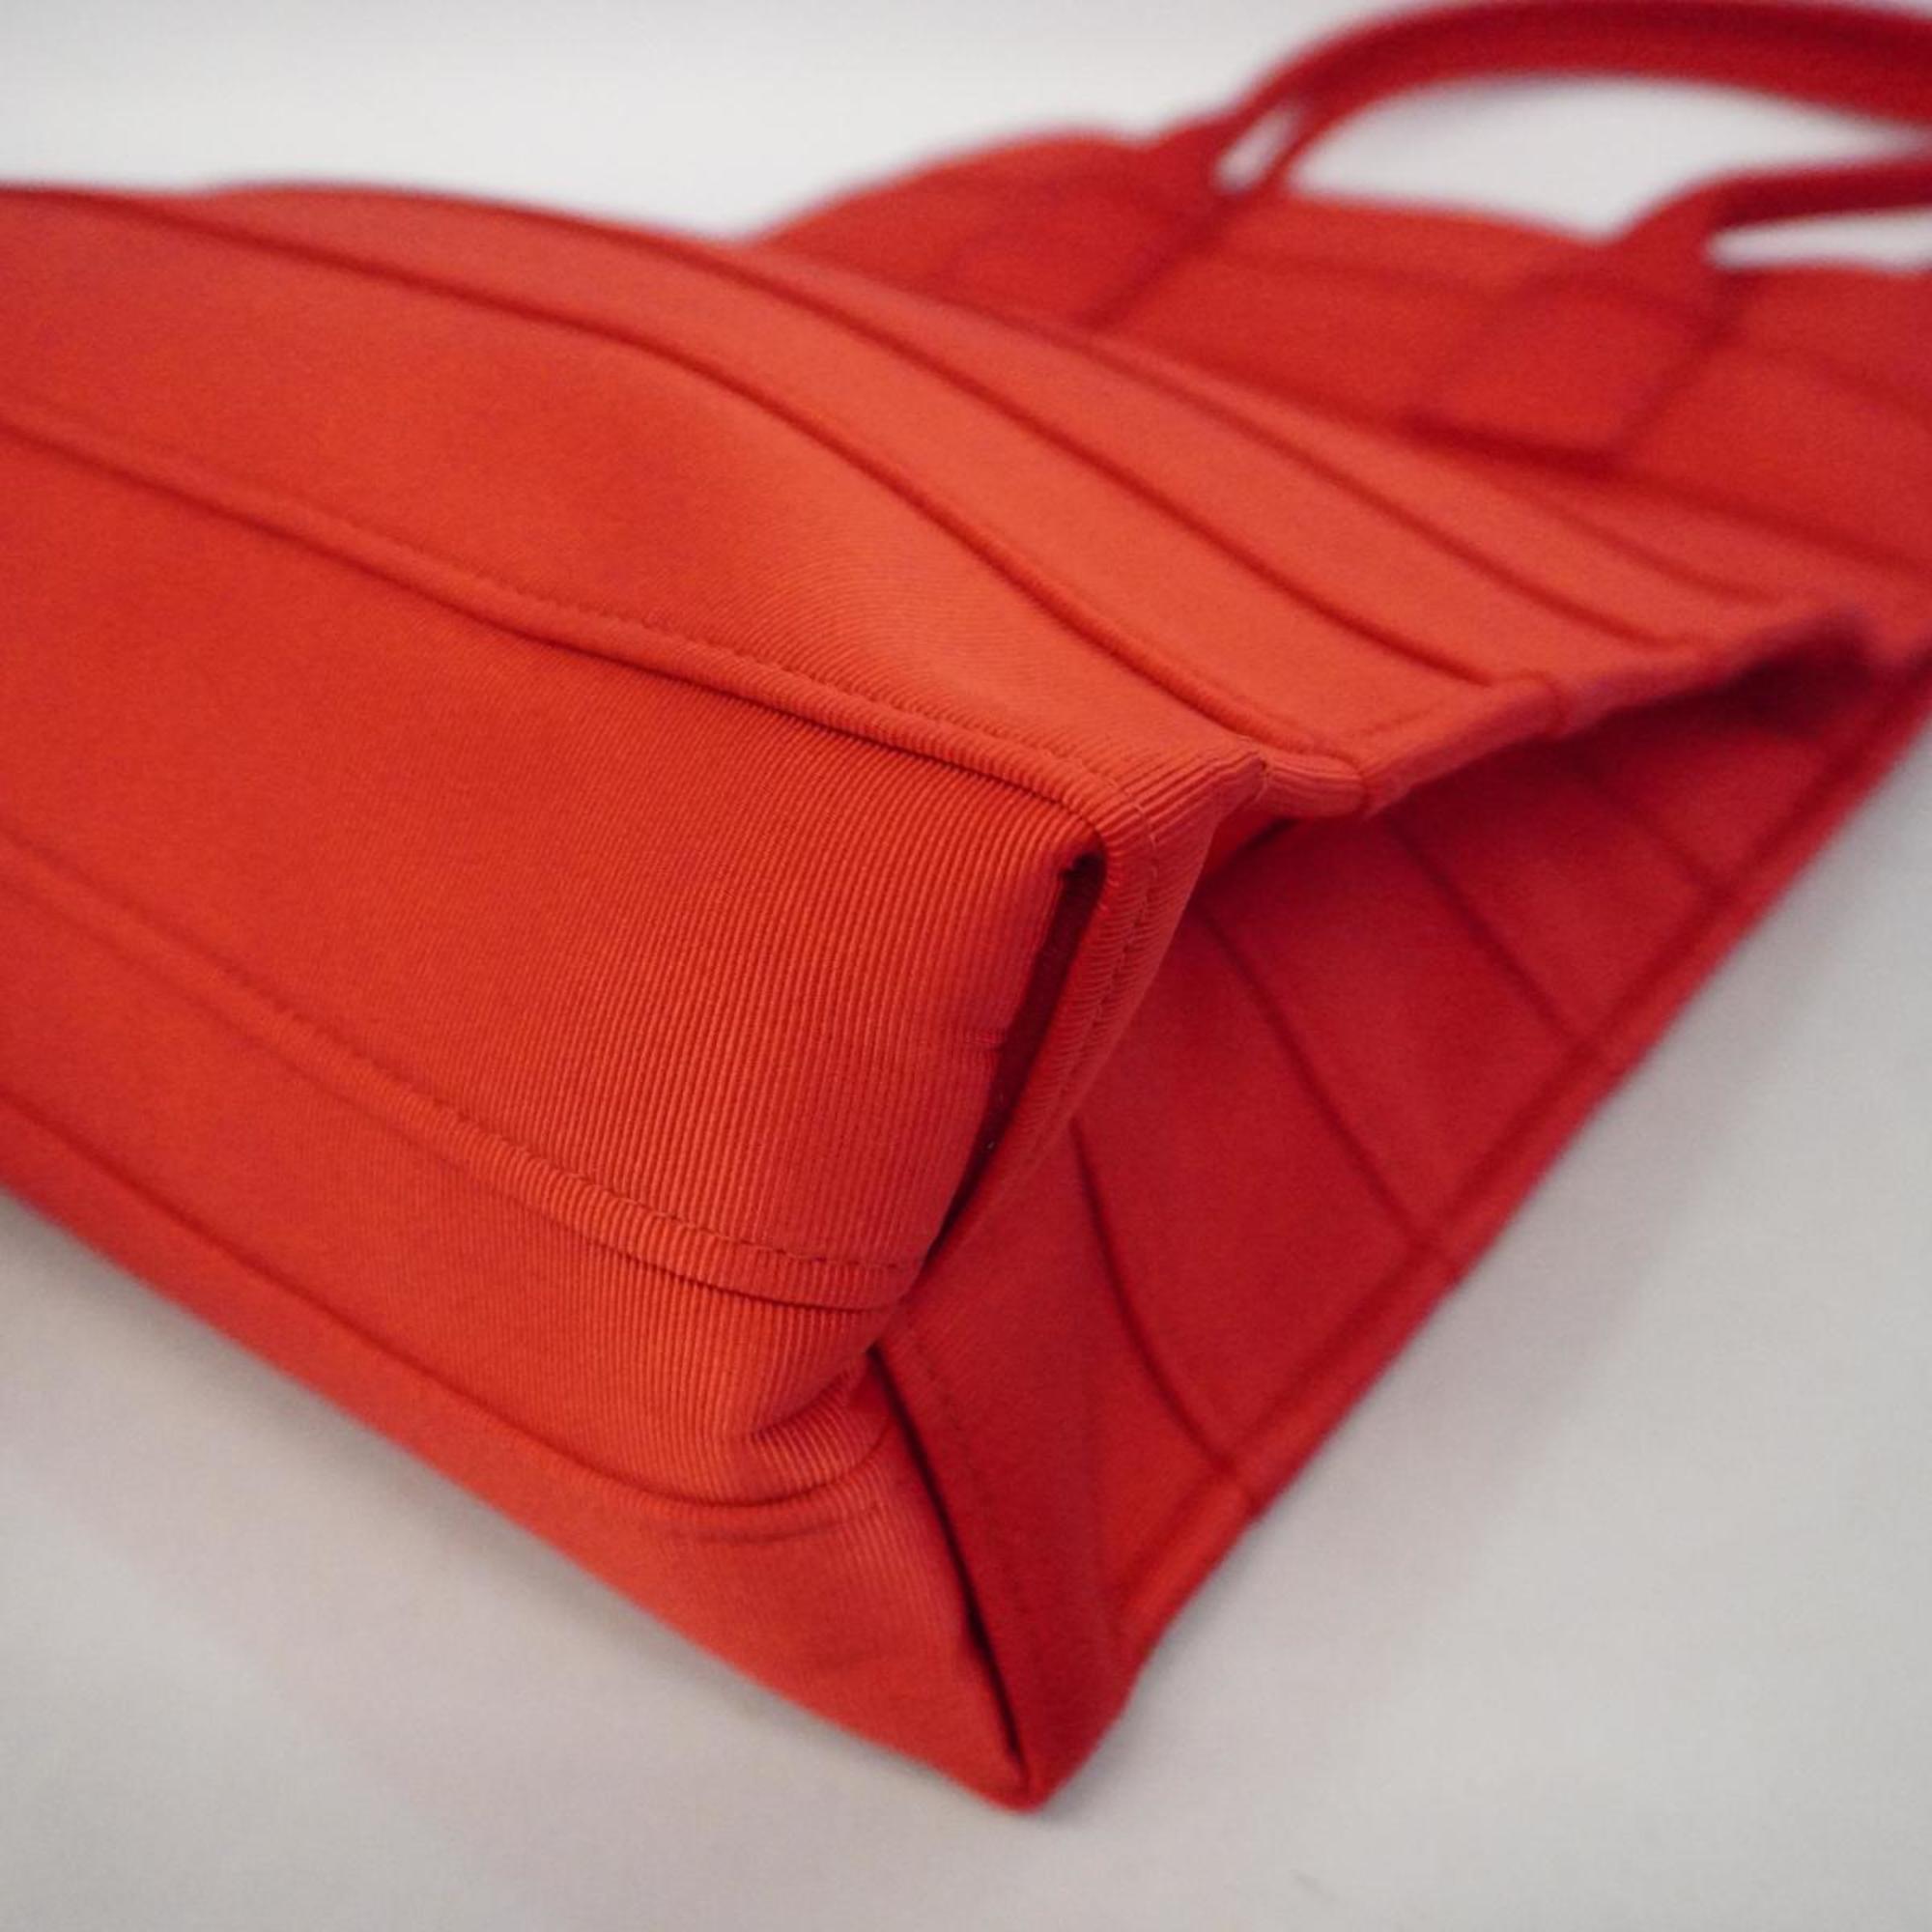 Salvatore Ferragamo Tote Bag Nylon Red Women's